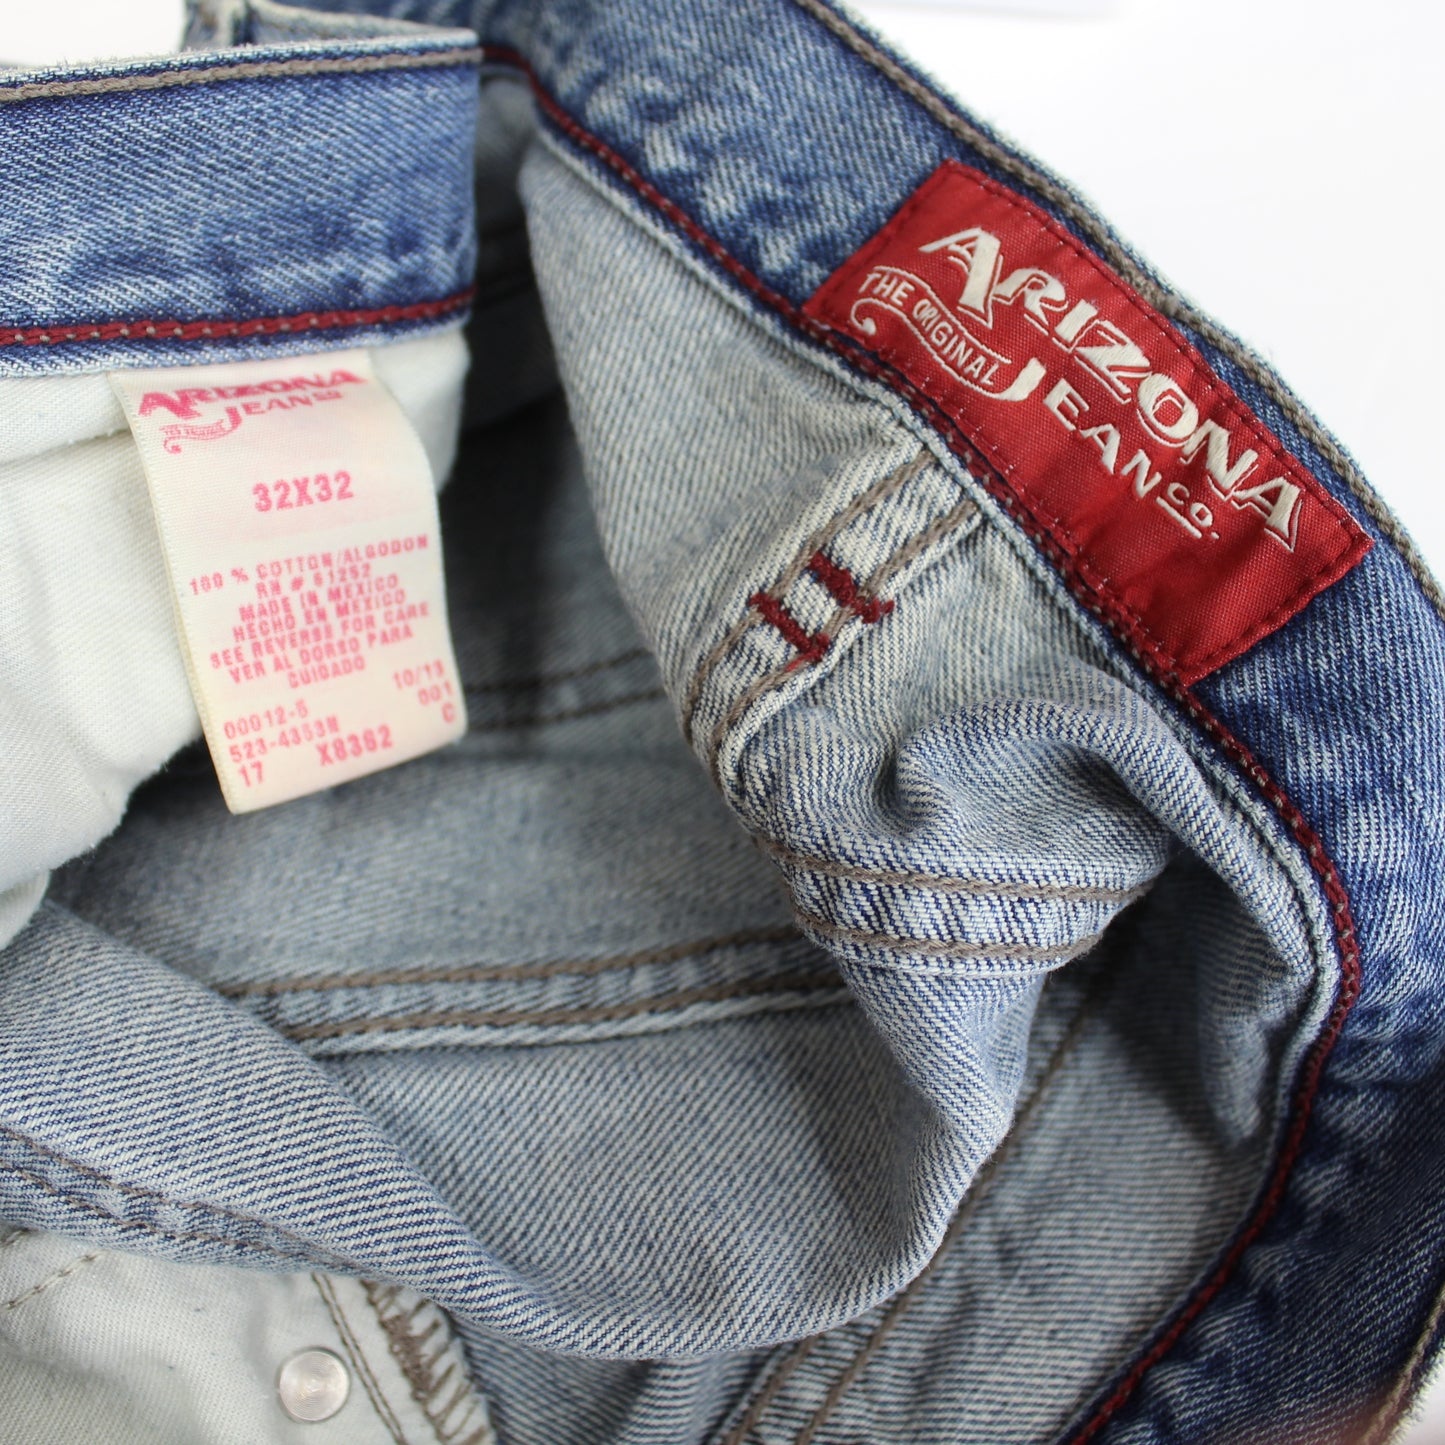 Arizona 100% Cotton Jeans Blue Straight Cut 32X32 orig tags X8362